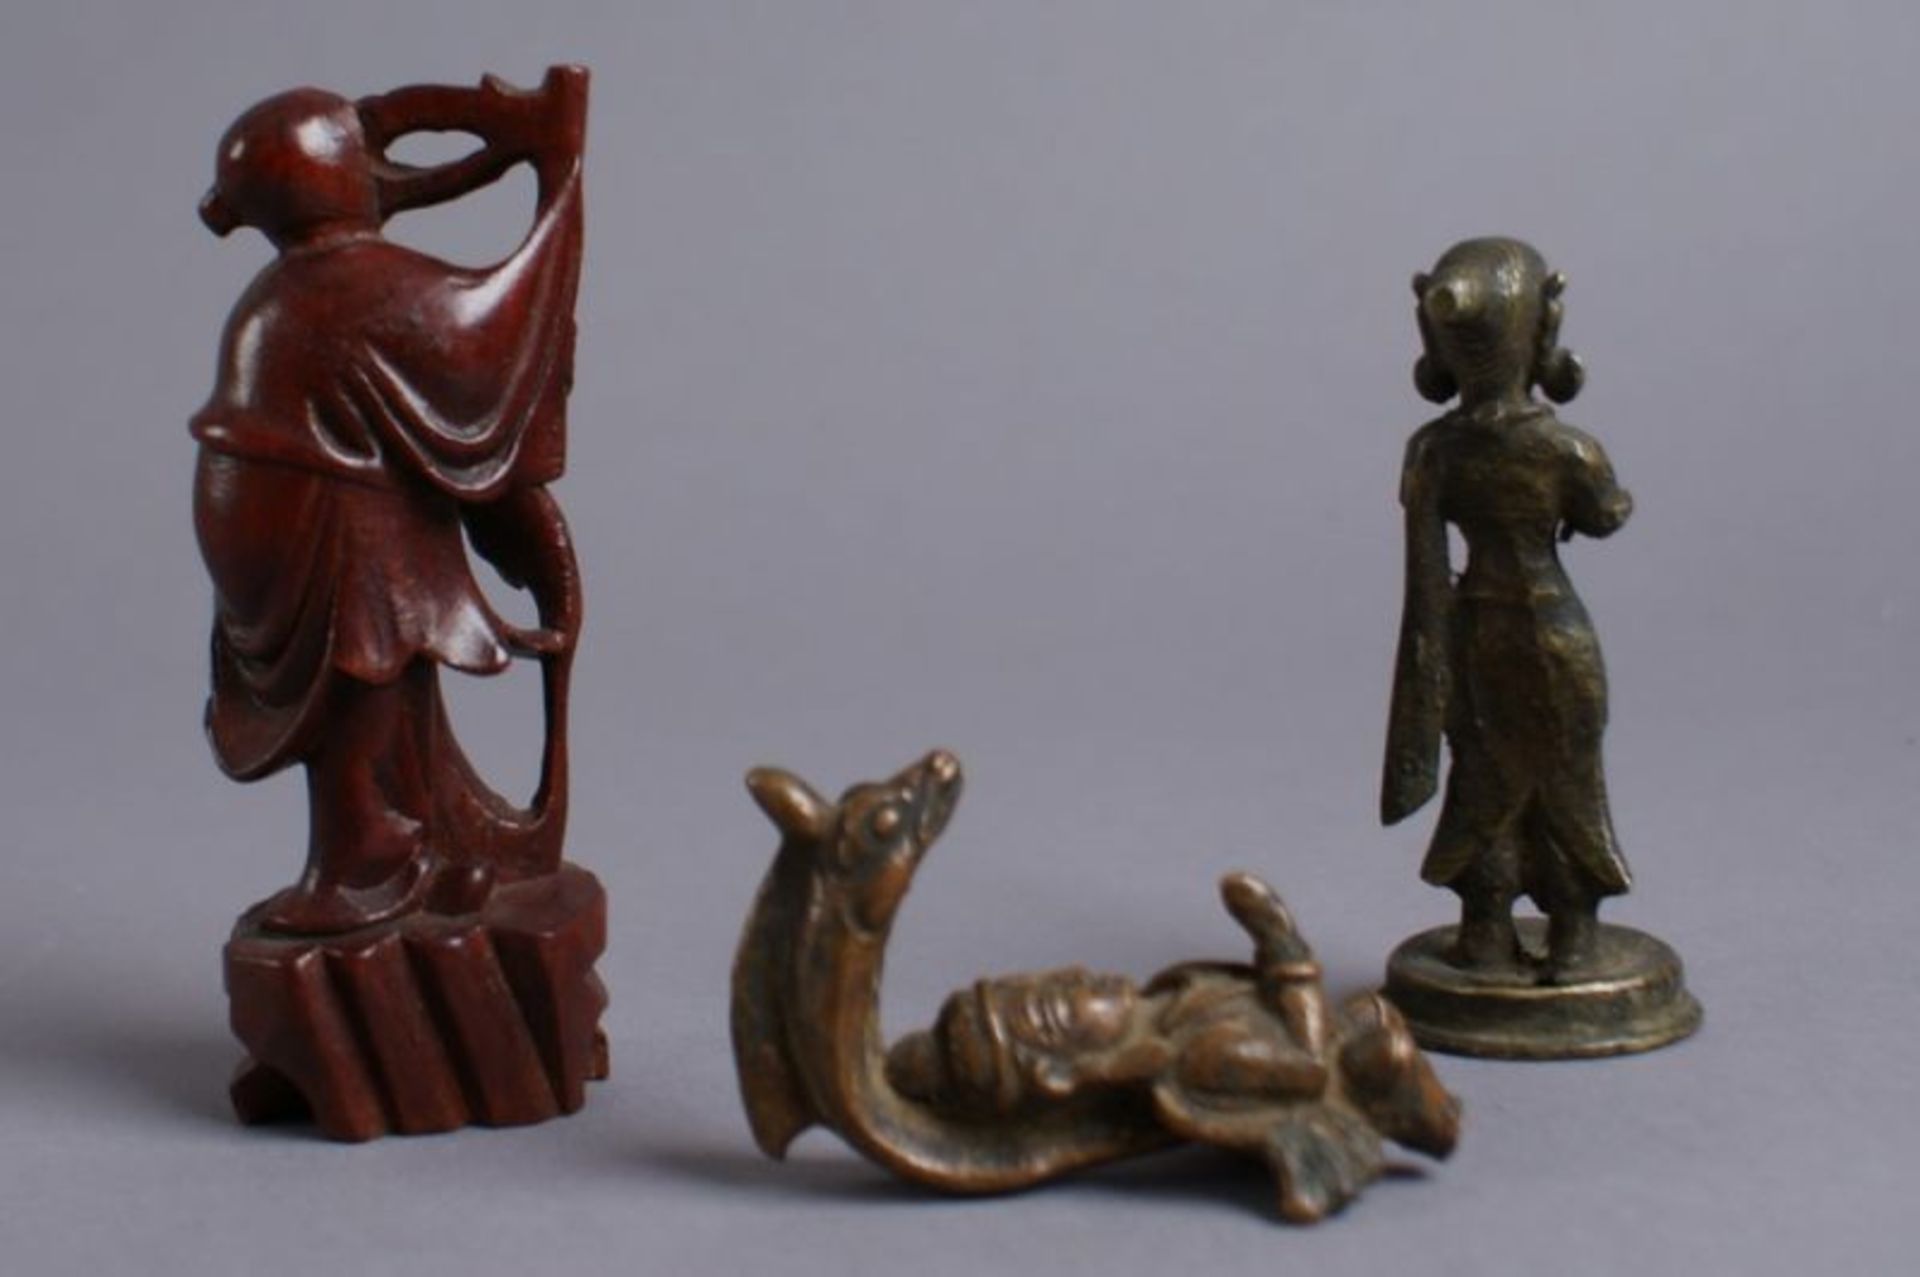 KONVOLUT ASIATISCHE SKULPTUREN 19. JH, aus Holz und Bronze gearbeitete Figuren, H 6,5, 8,5, 10,5 - Bild 5 aus 5